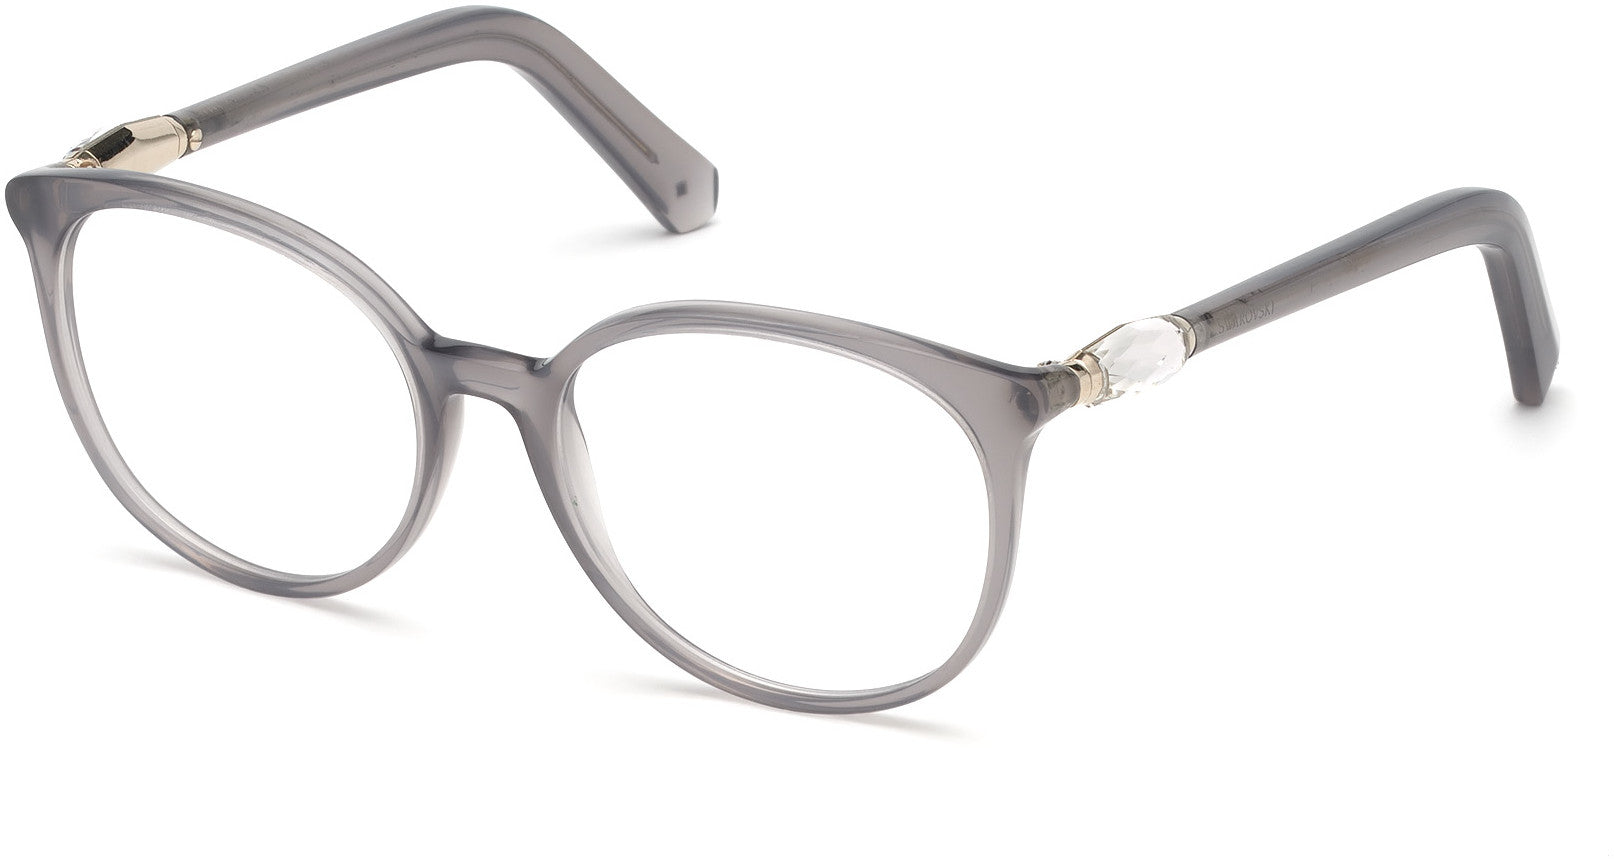 Swarovski SK5310 Round Eyeglasses 020-020 - Grey